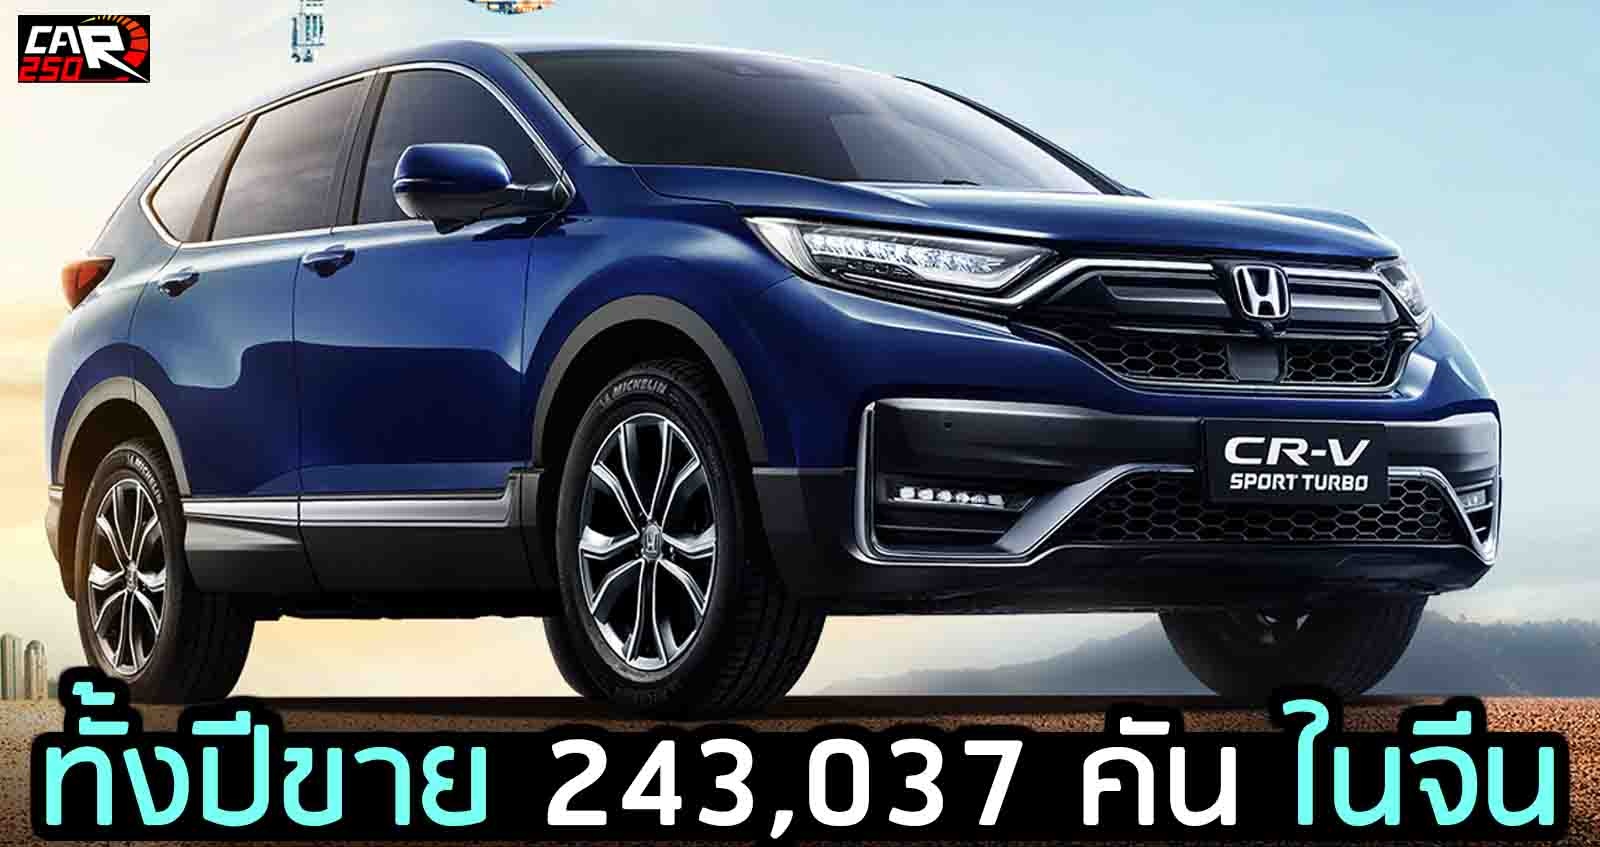 ทั้งปีขาย 243,037 คัน ในจีน Honda CR-V